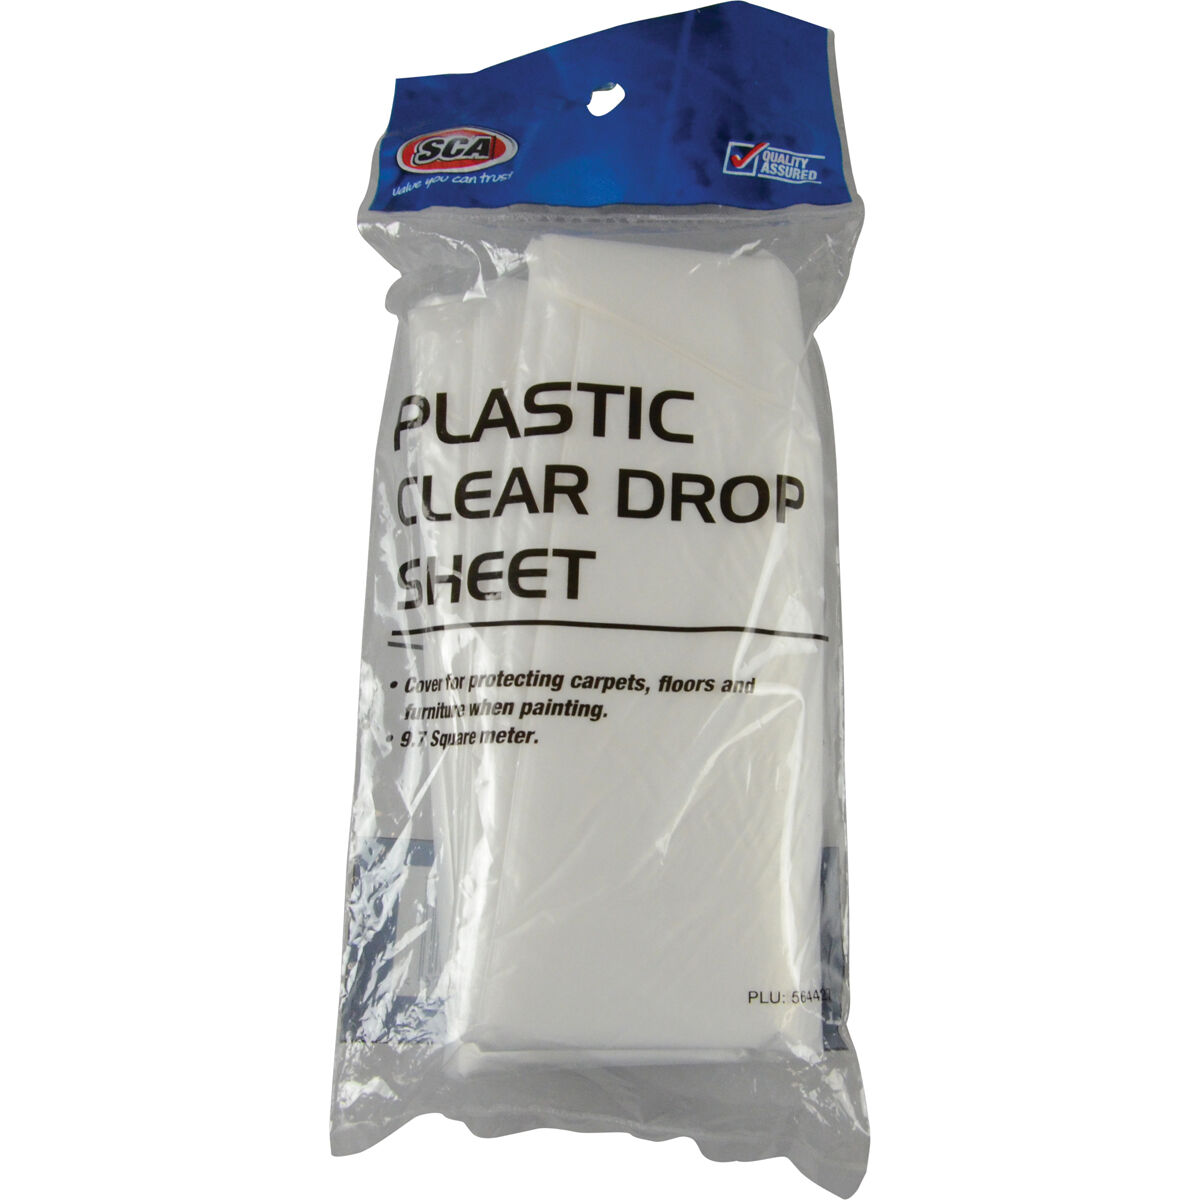 SCA Plastic Drop Sheet - 9.7m2, , scaau_hi-res